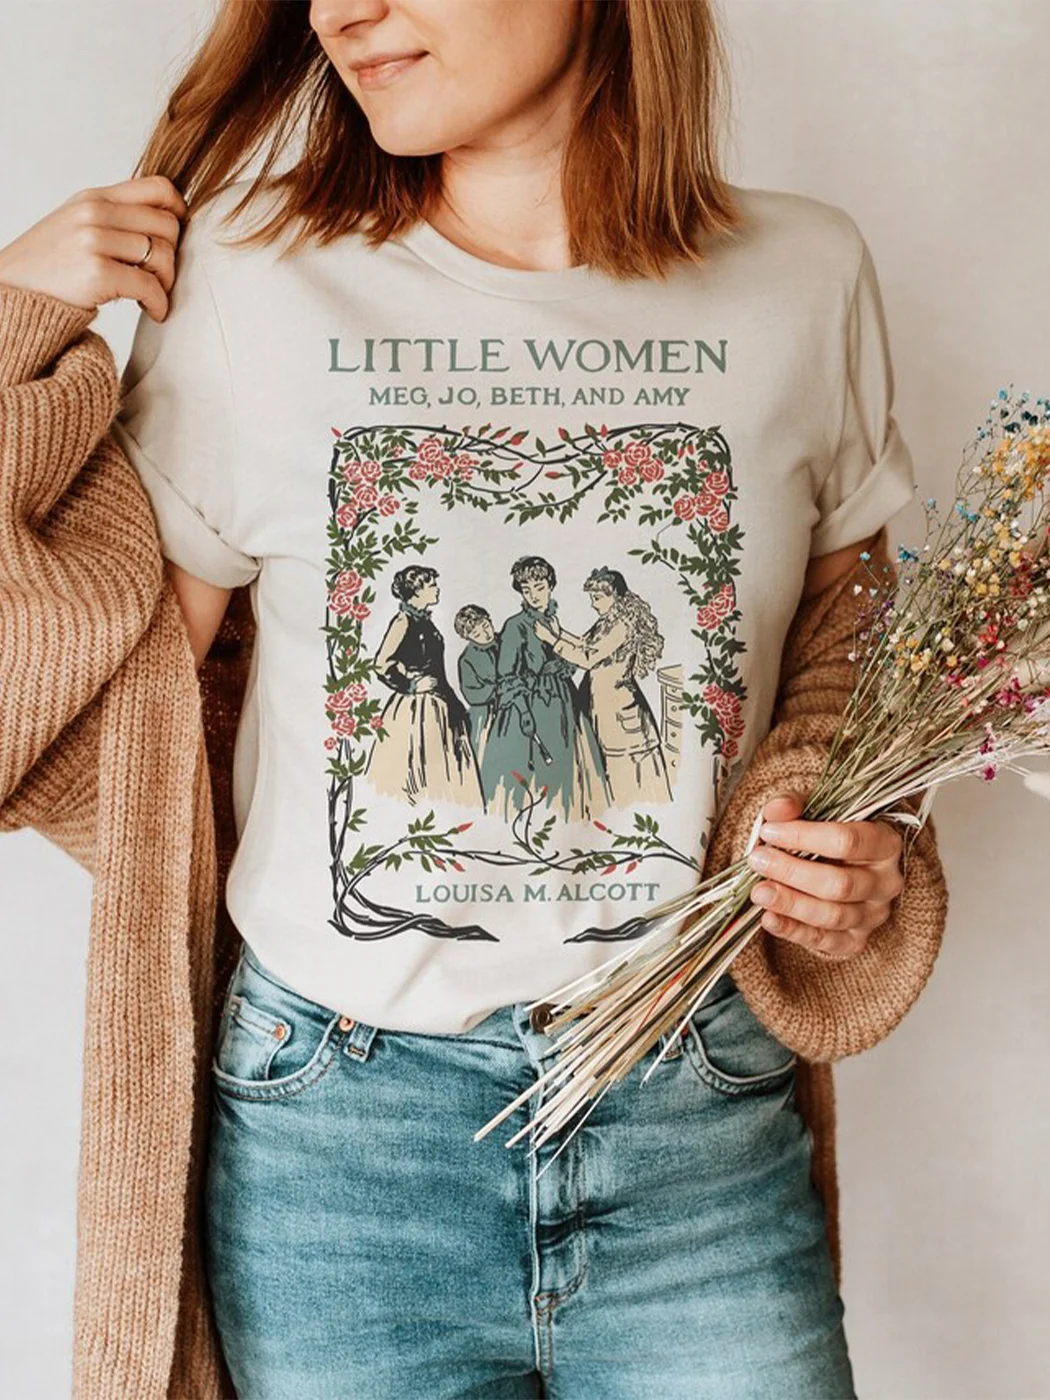 Little Women Shirt - English Literature Gift / DarkAcademias /Darkacademias